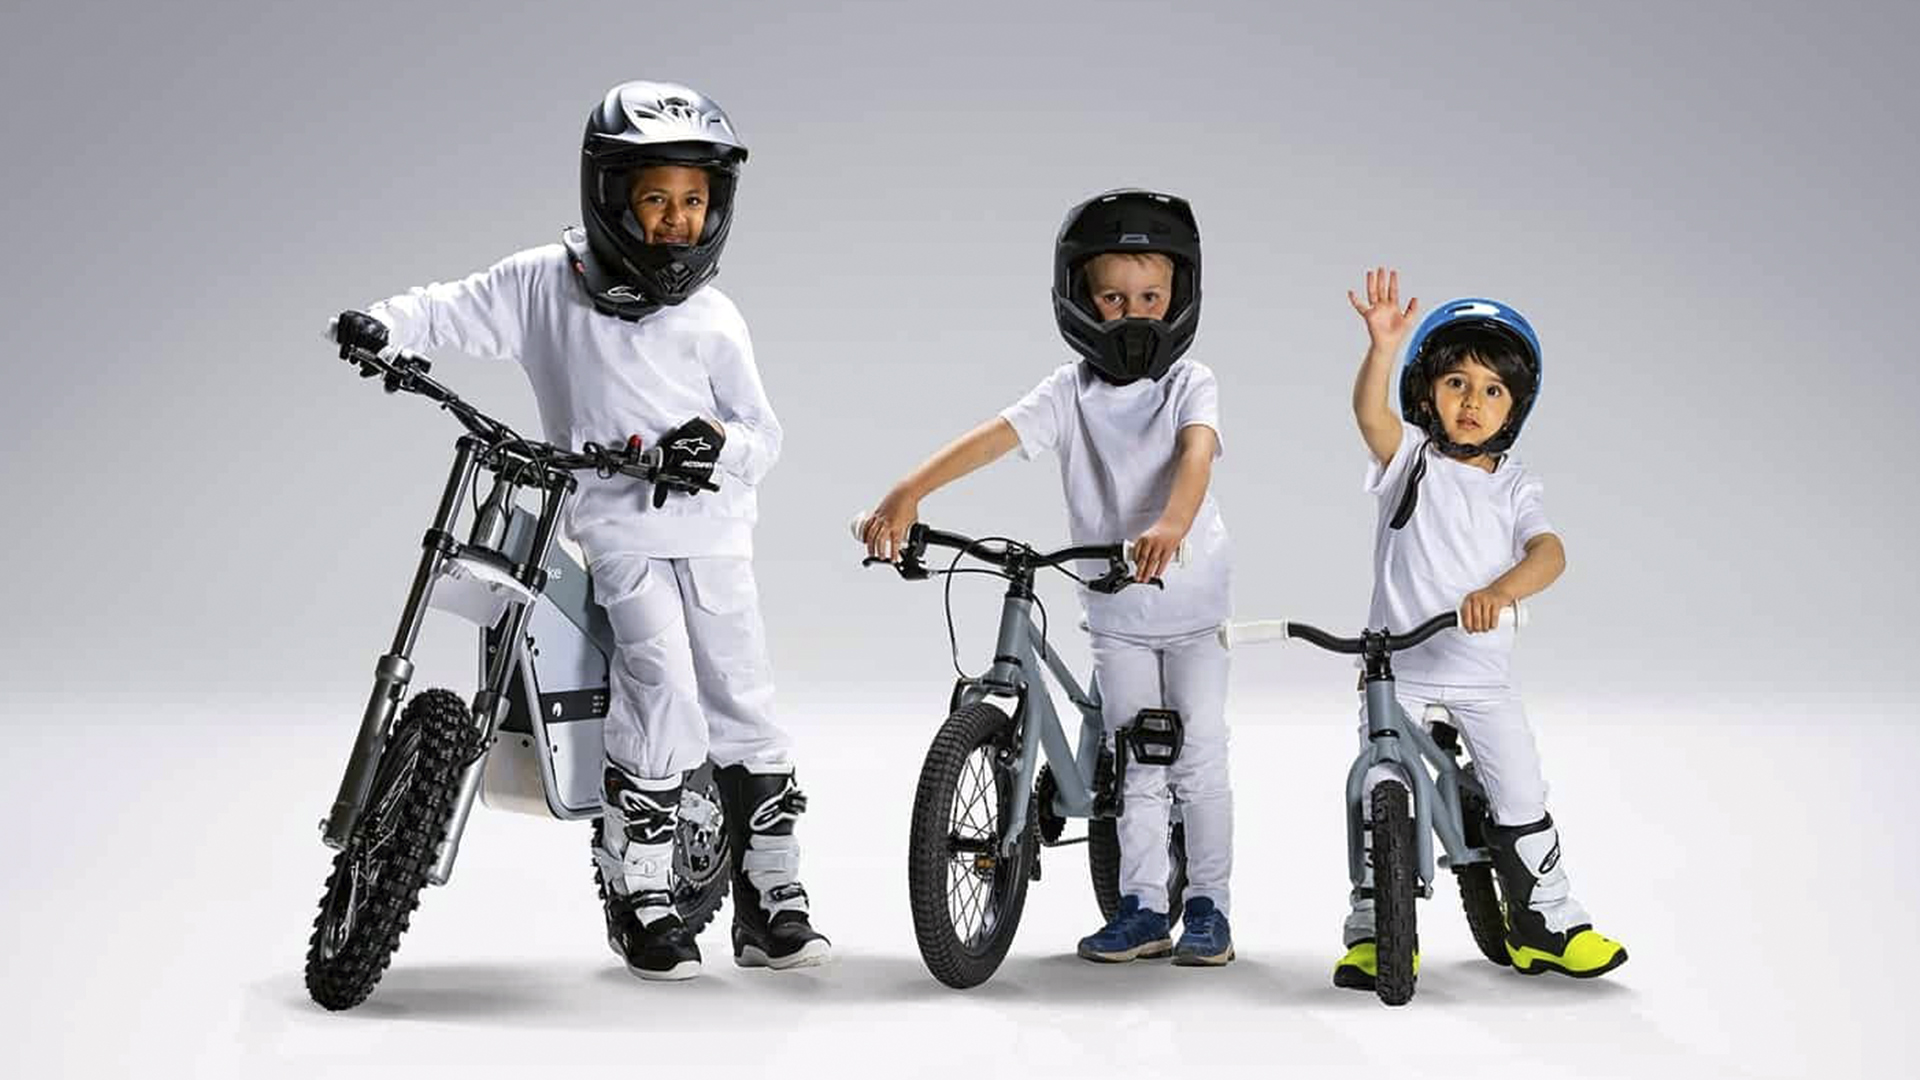 Empresa sueca Cake revela kit infantil e inclui até uma pequena moto elétrica off-road que custa mais de R$ 17 mil